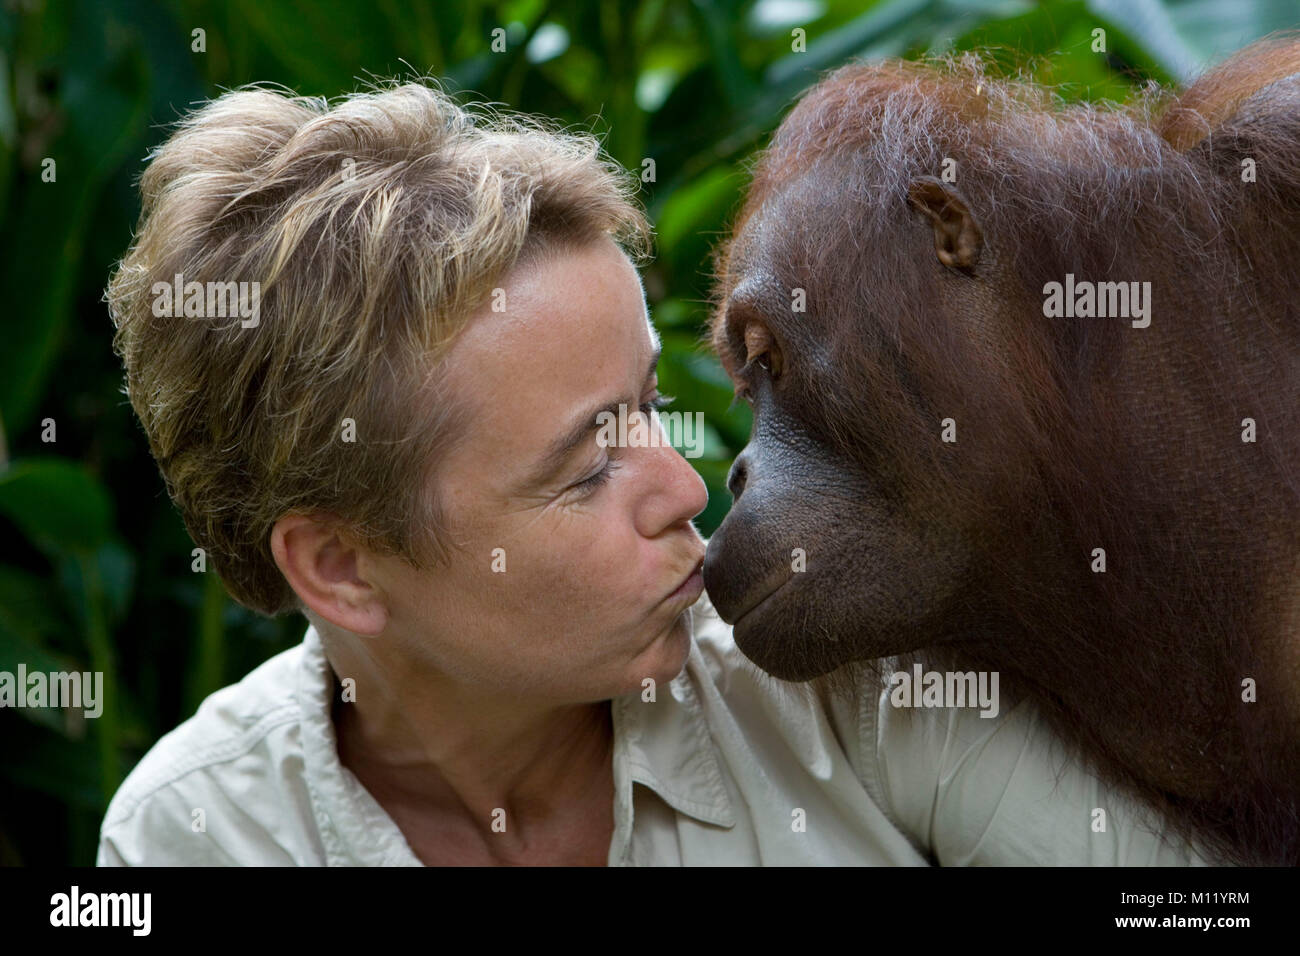 L'Indonésie. Zoo de Surabaya. Île de Java. L'orang-outan. (Pongo pygmeus) et touristiques s'embrassant. Close-up. Banque D'Images